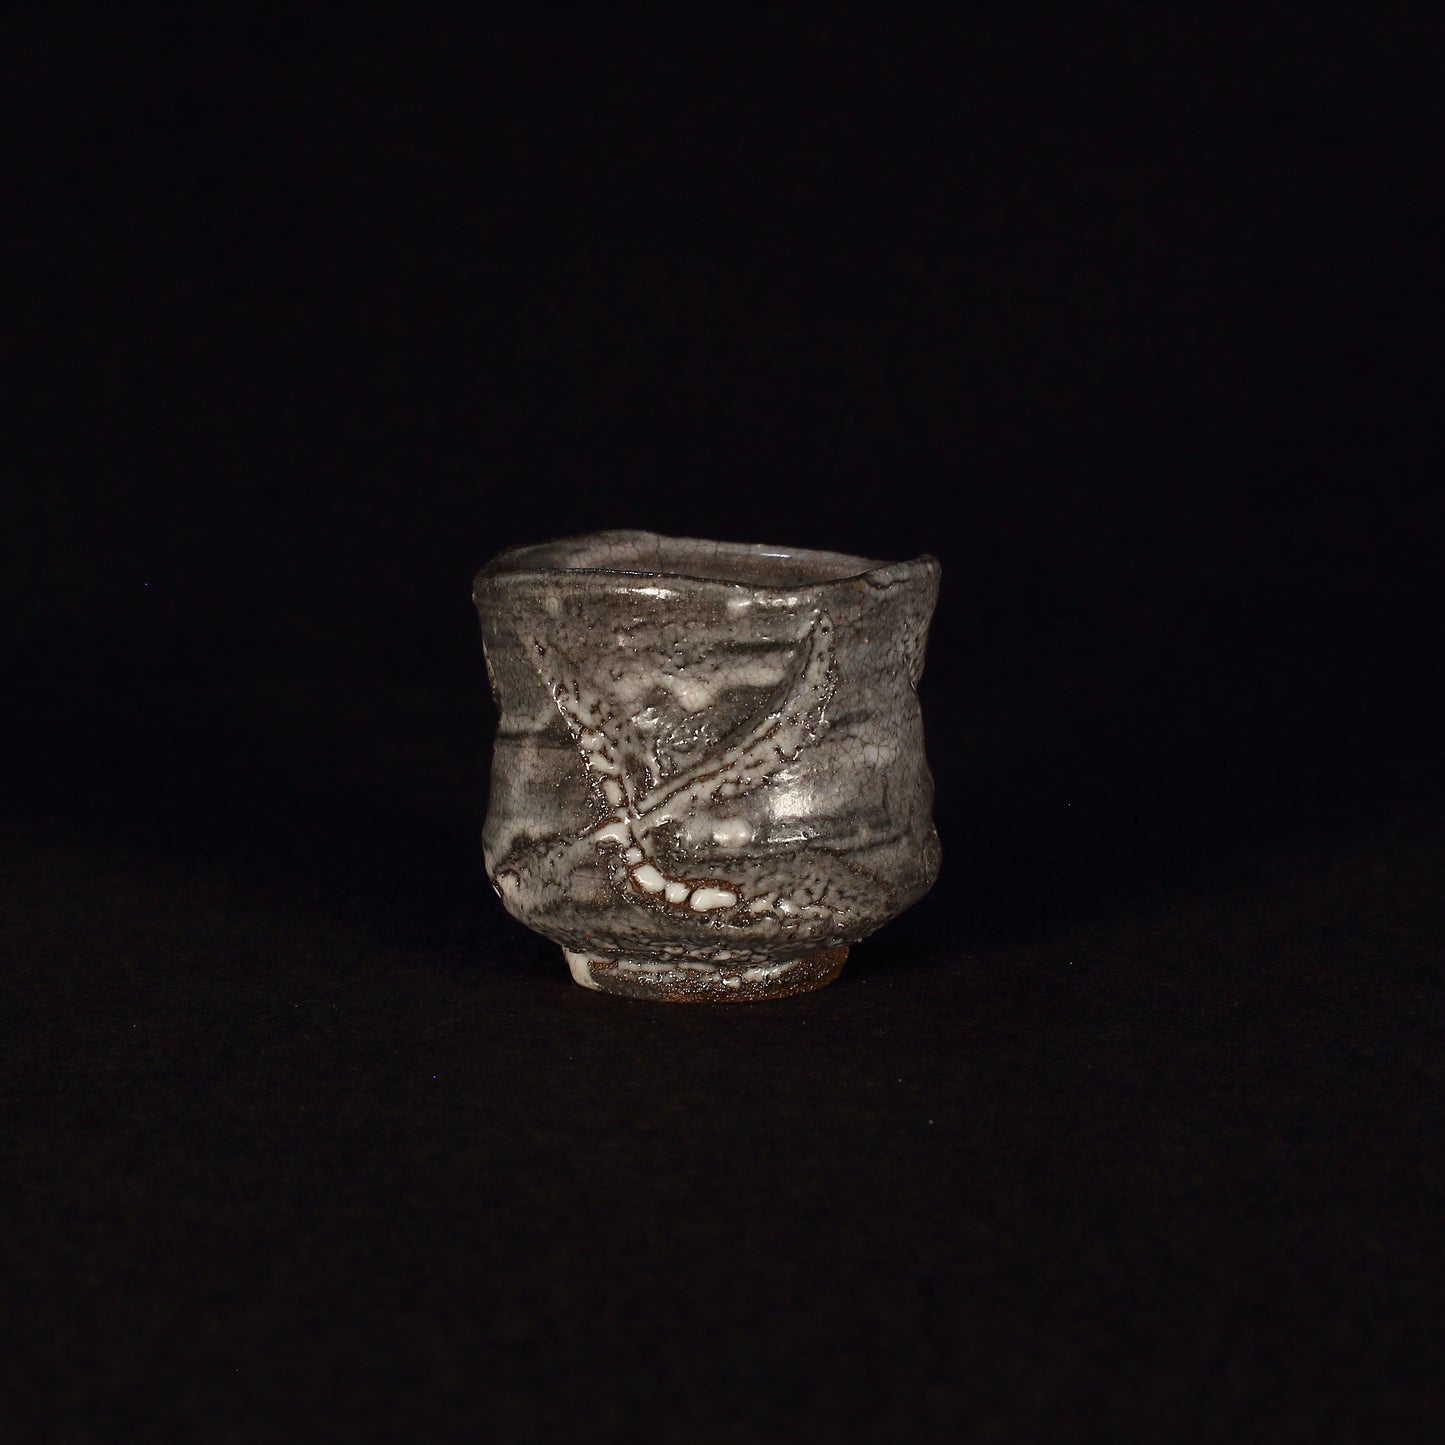 Karatsu ware | Naoki Kojima | Hori Karatsu sake cup [one-of-a-kind item]